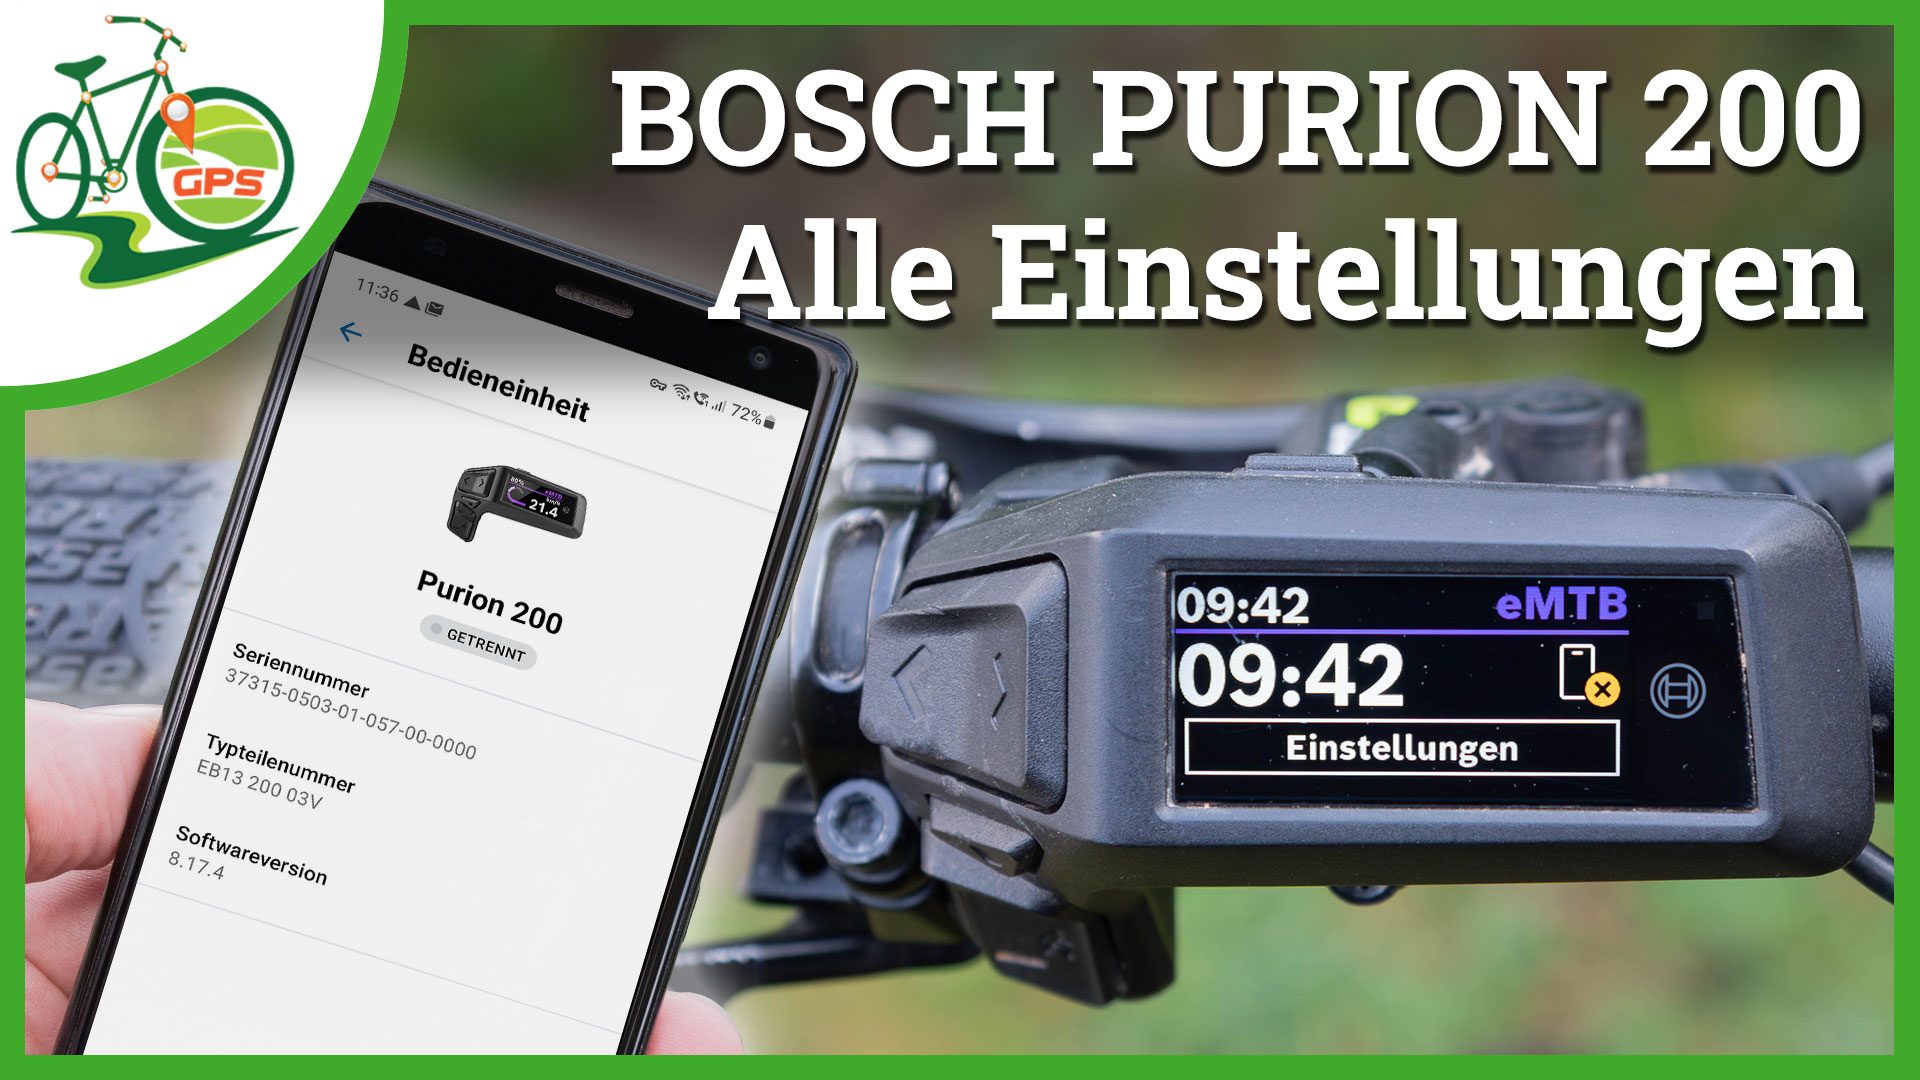 Bosch Purion 200 Einstellungen